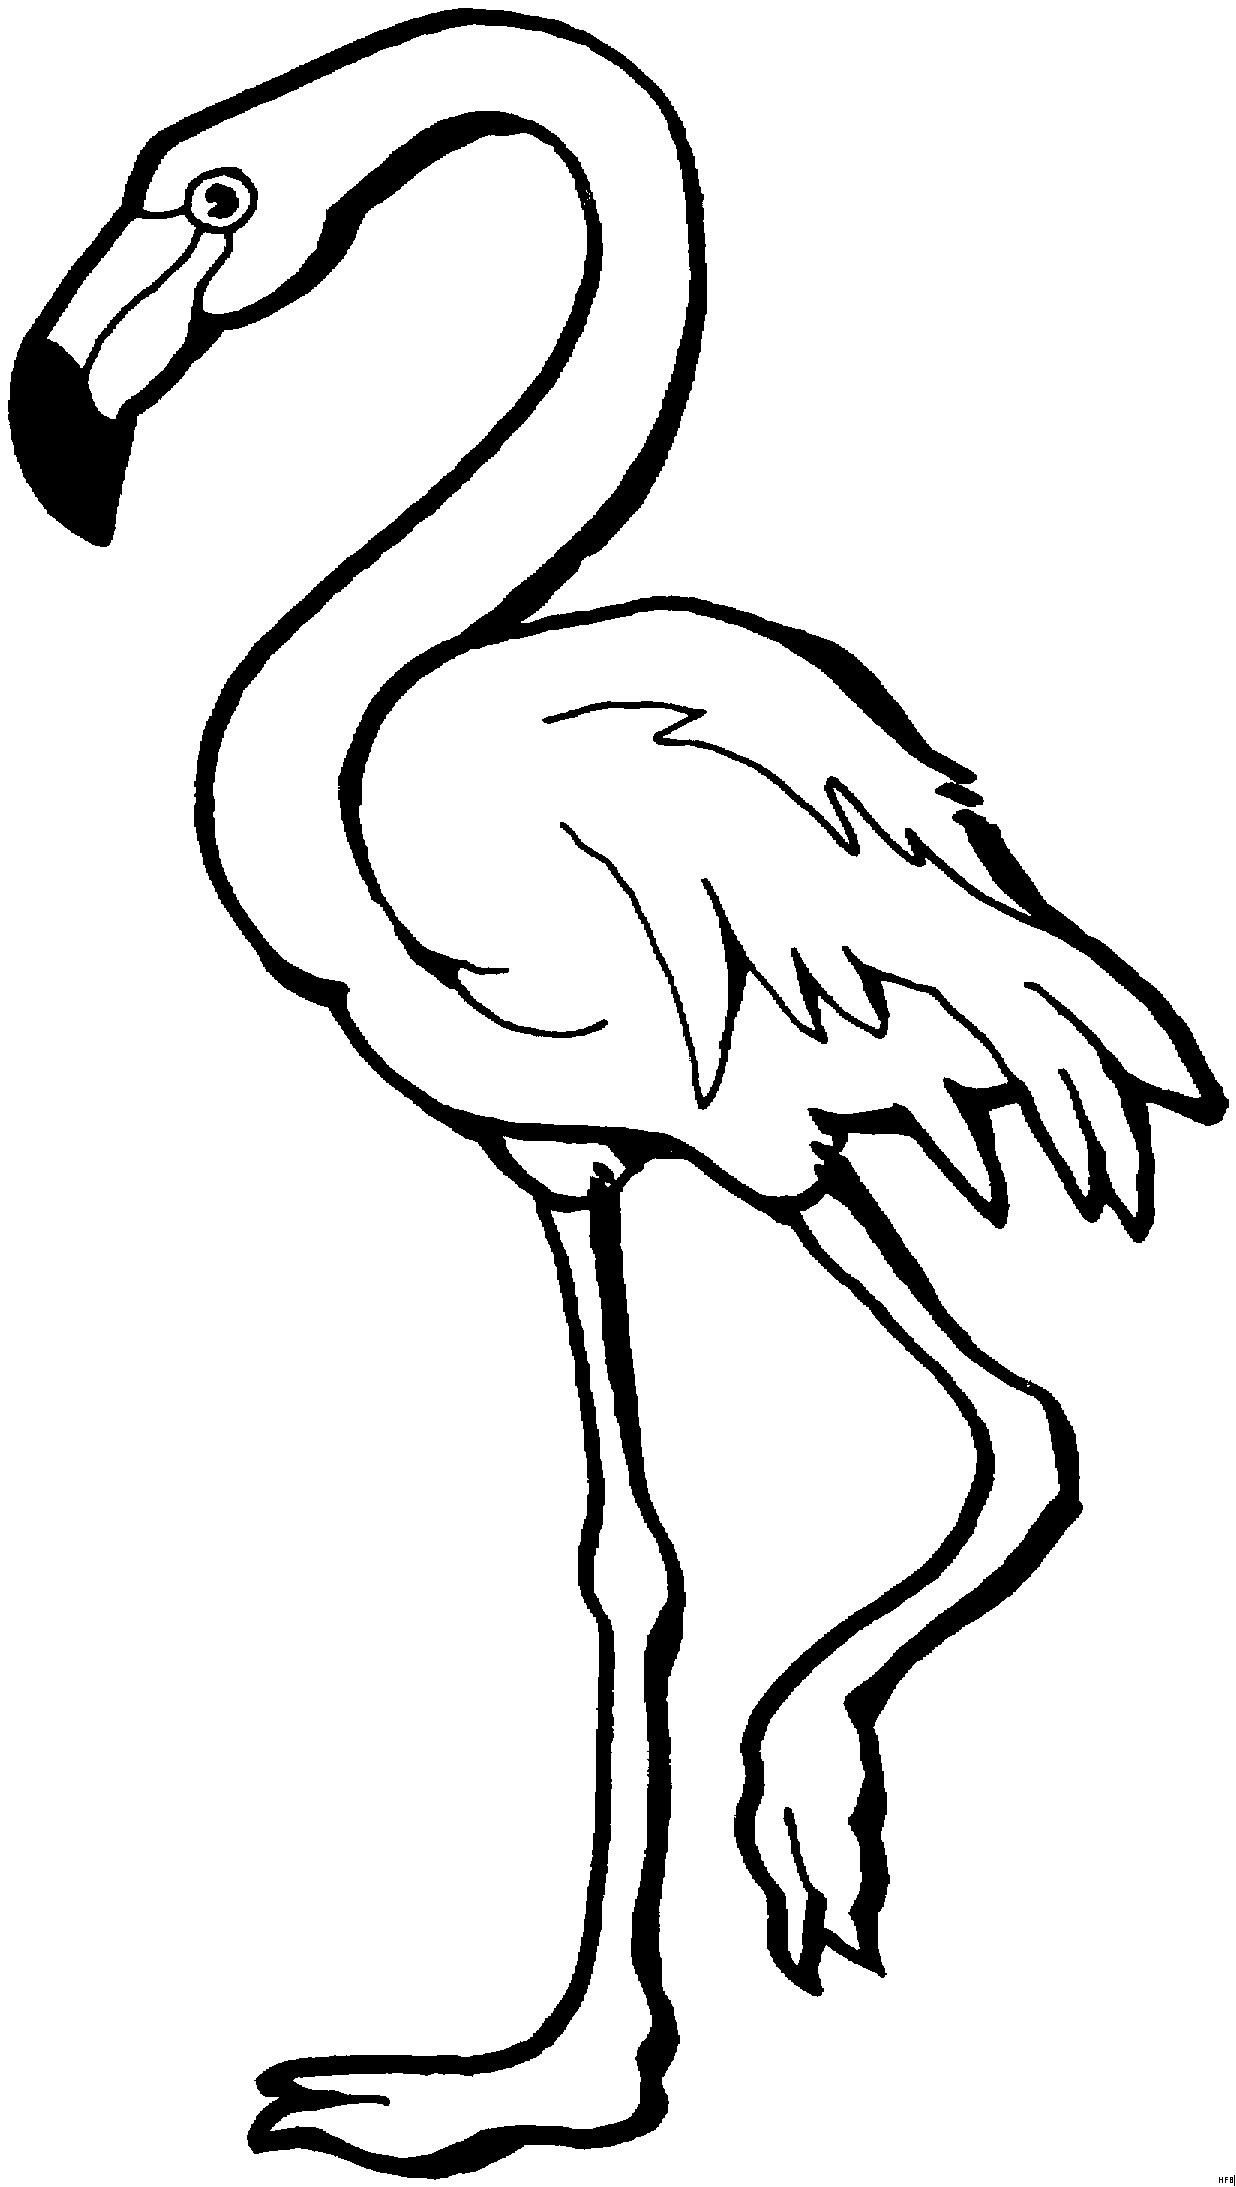 Flamingo Ausmalbilder
 Flamingo Schematisch Ausmalbild & Malvorlage Tiere